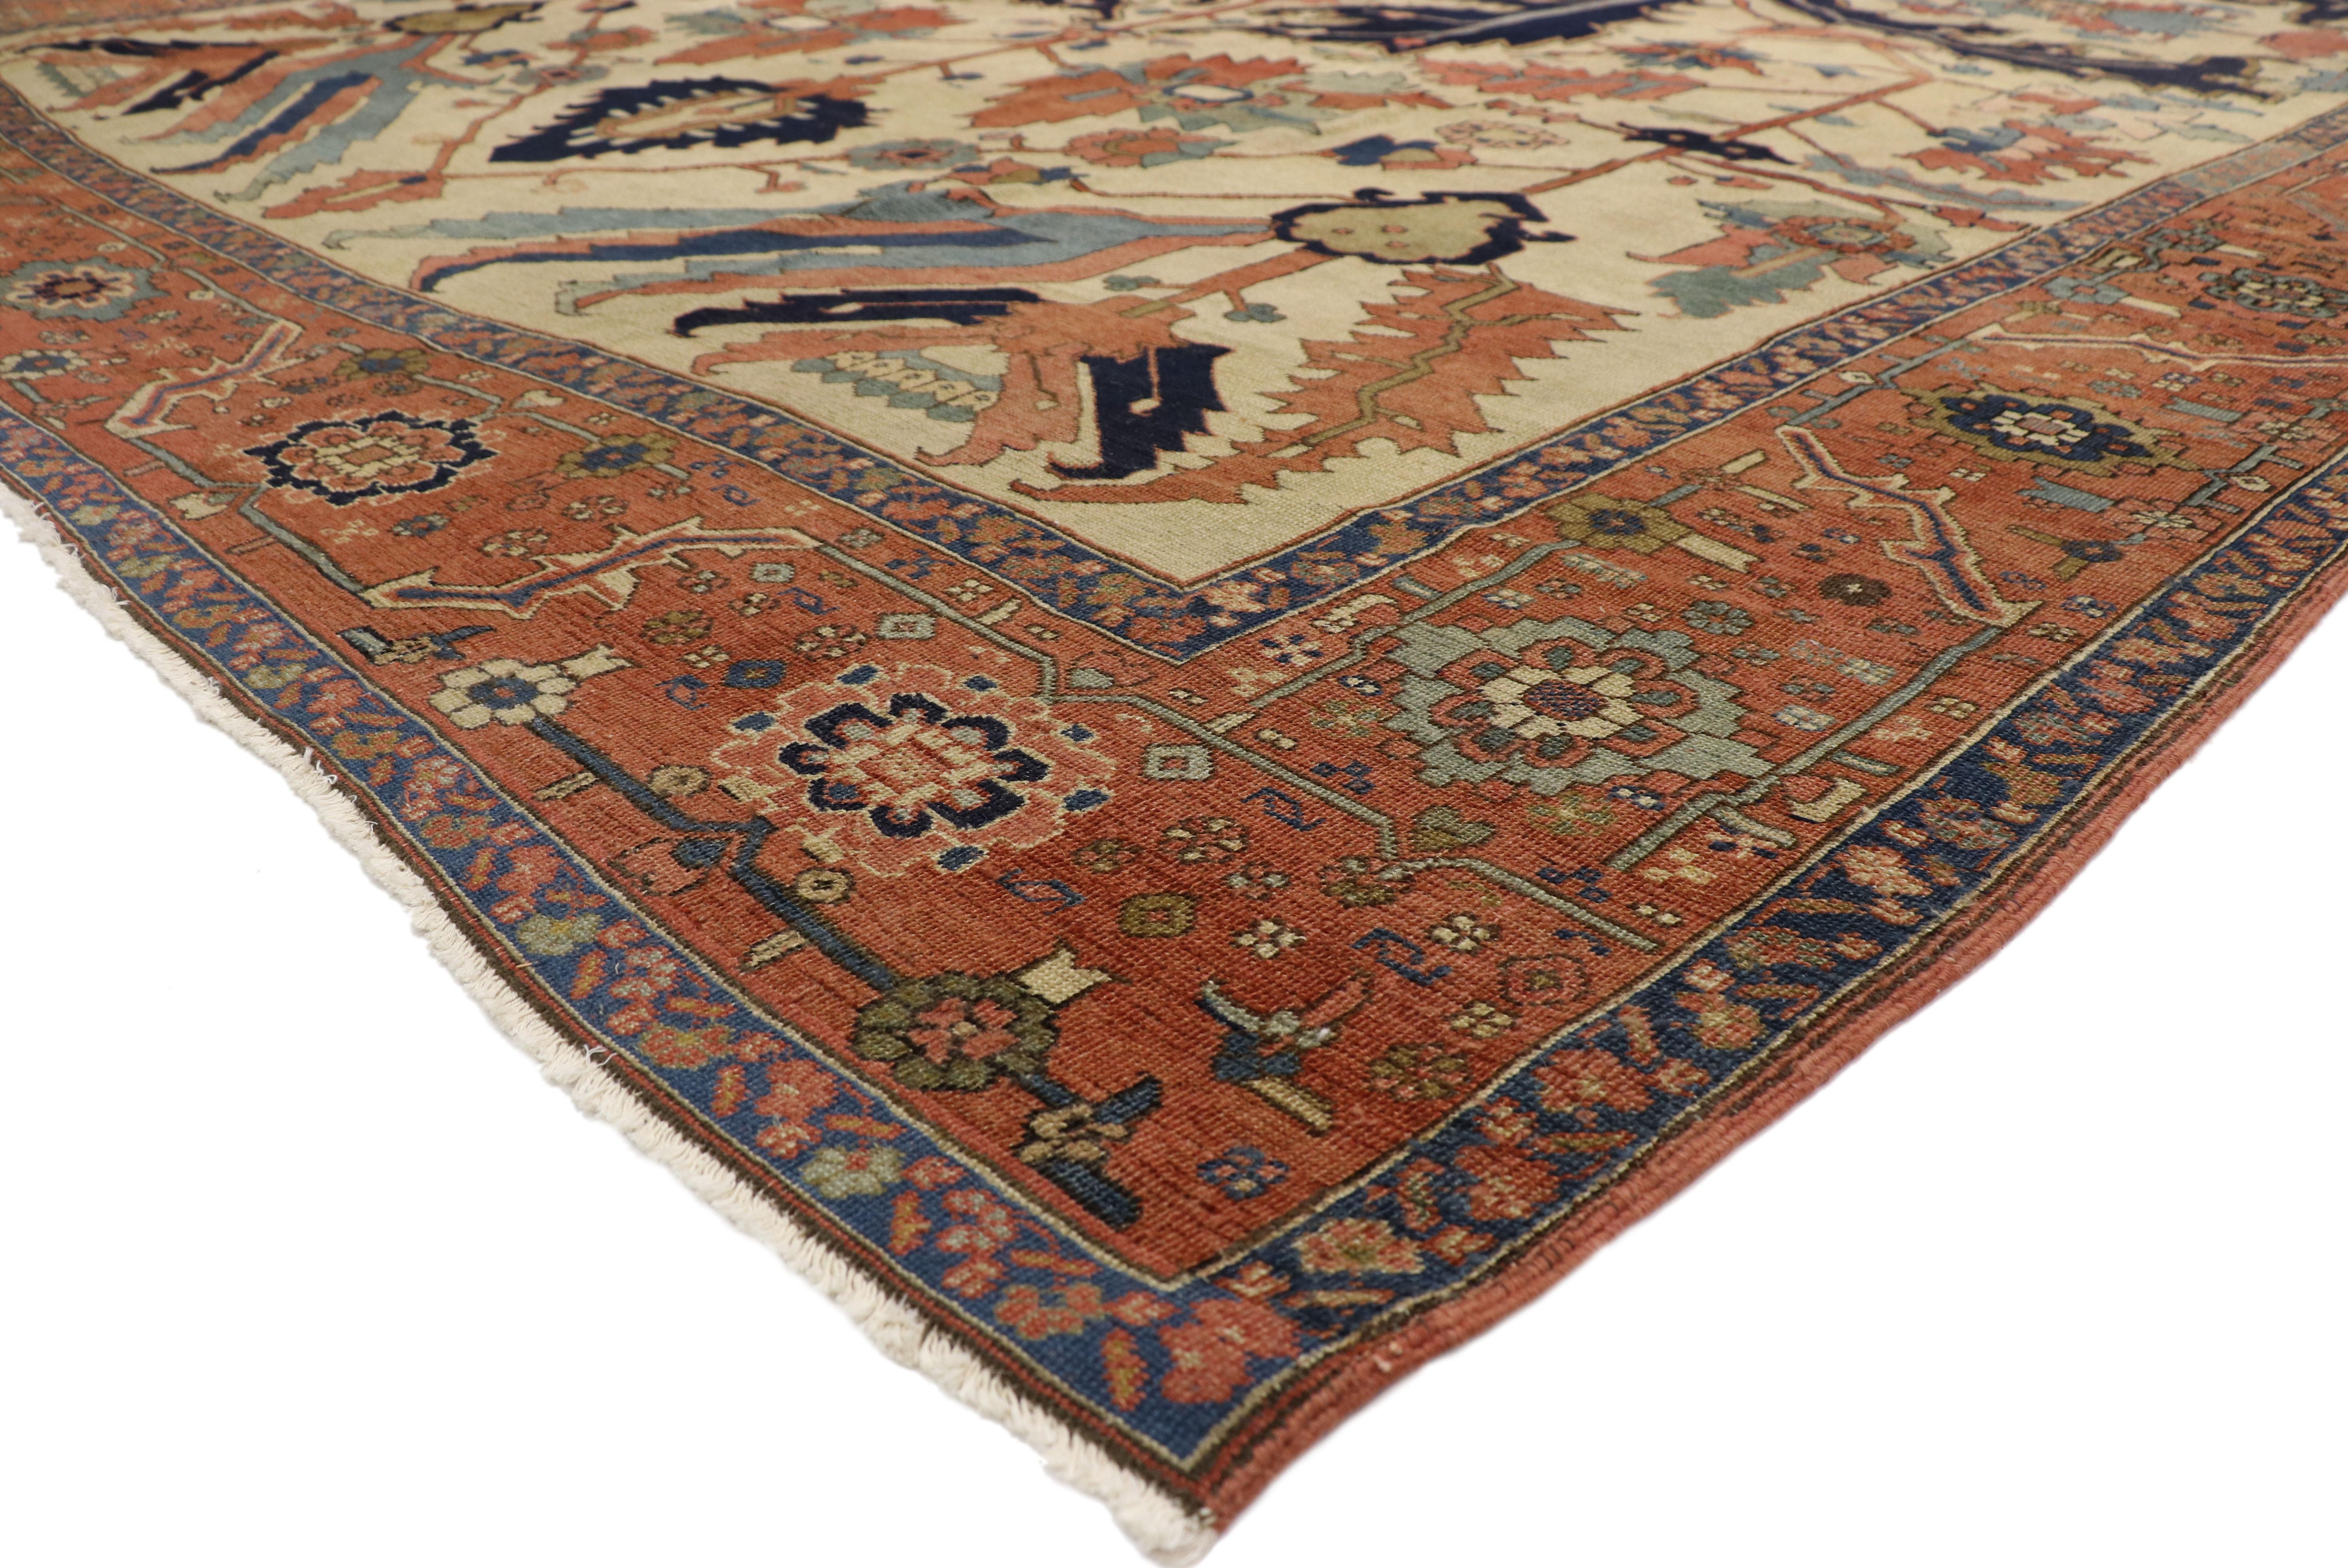 76927 ancien tapis persan all-over Serapi de style Tudor anglais. Avec une palette de couleurs chaudes et neutres, un attrait saisissant et des éléments de conception architecturale, ce tapis en laine nouée à la main, de style Tudor et de style